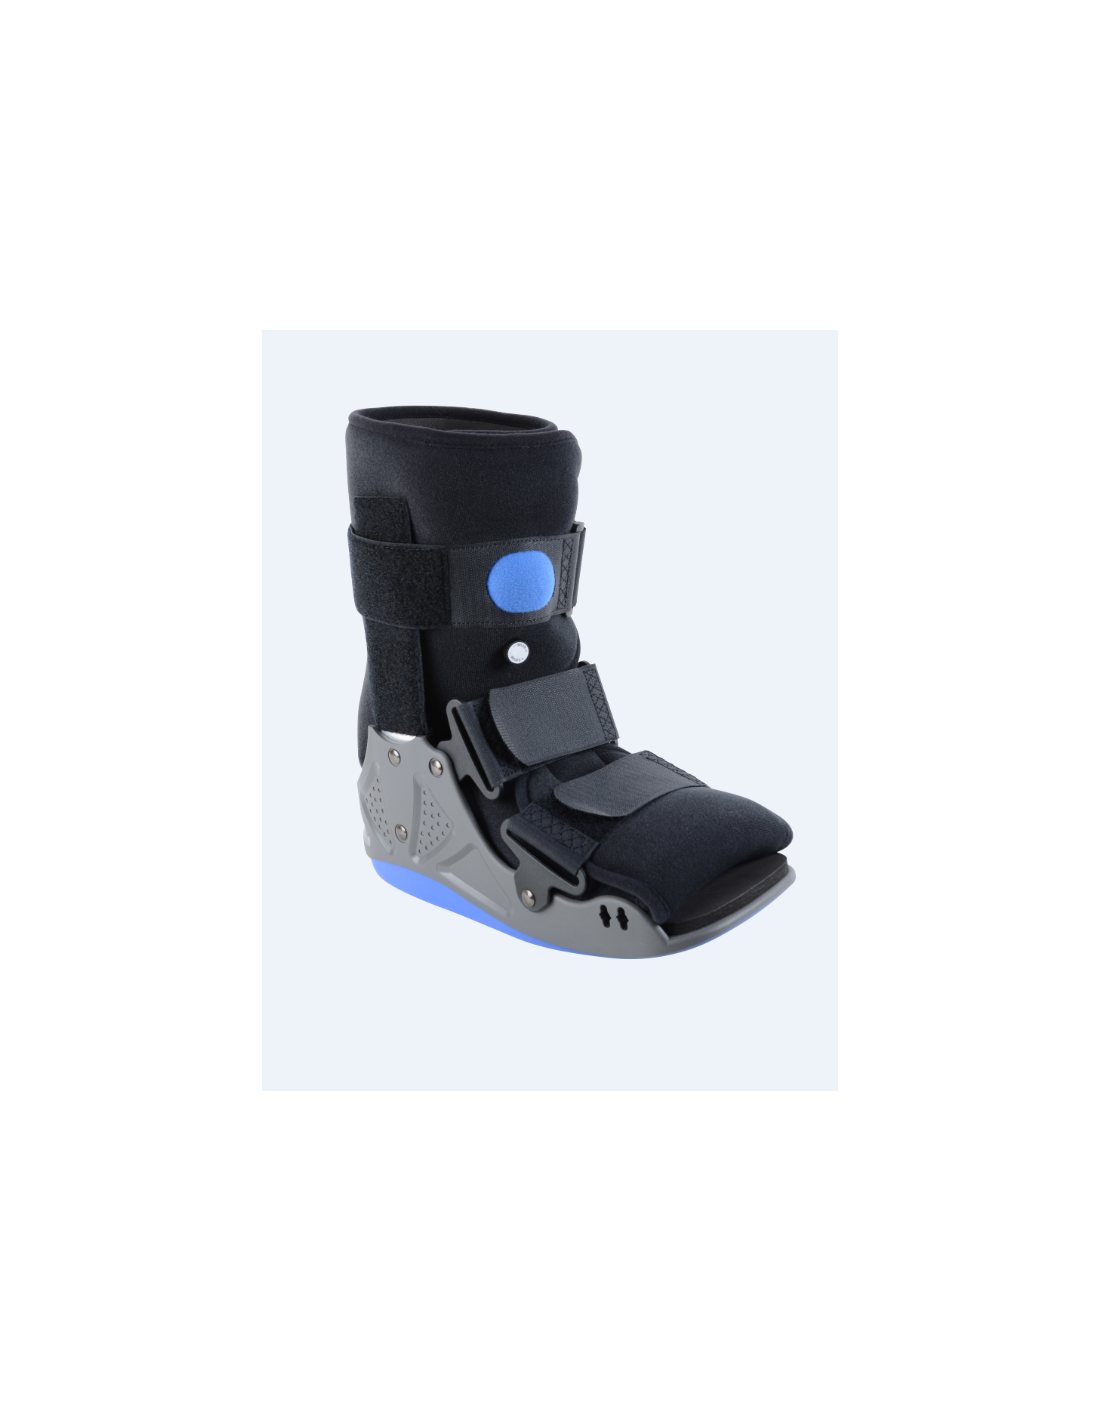 Orteza na stopę typu but ze sztywnymi elementami bocznymi i komorą pneumatyczną LigaStep AIR Walker